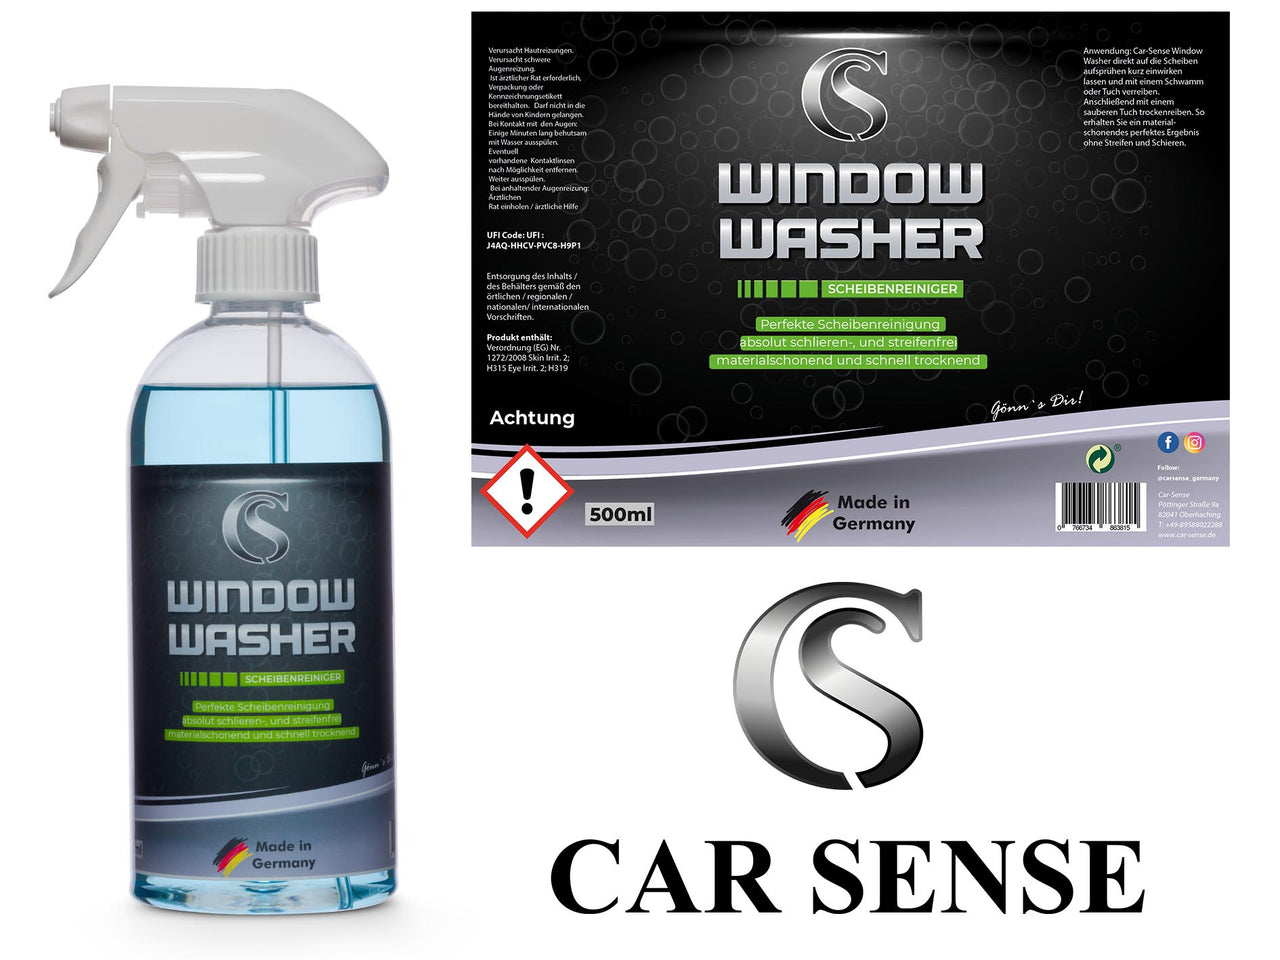 Car Sense Window Washer Autoglasreiniger 0,5 L Fensterreiniger I Autopflege Reinigung von Fahrzeugscheiben innen und außen I streifenfrei für den perfekten Durchblick